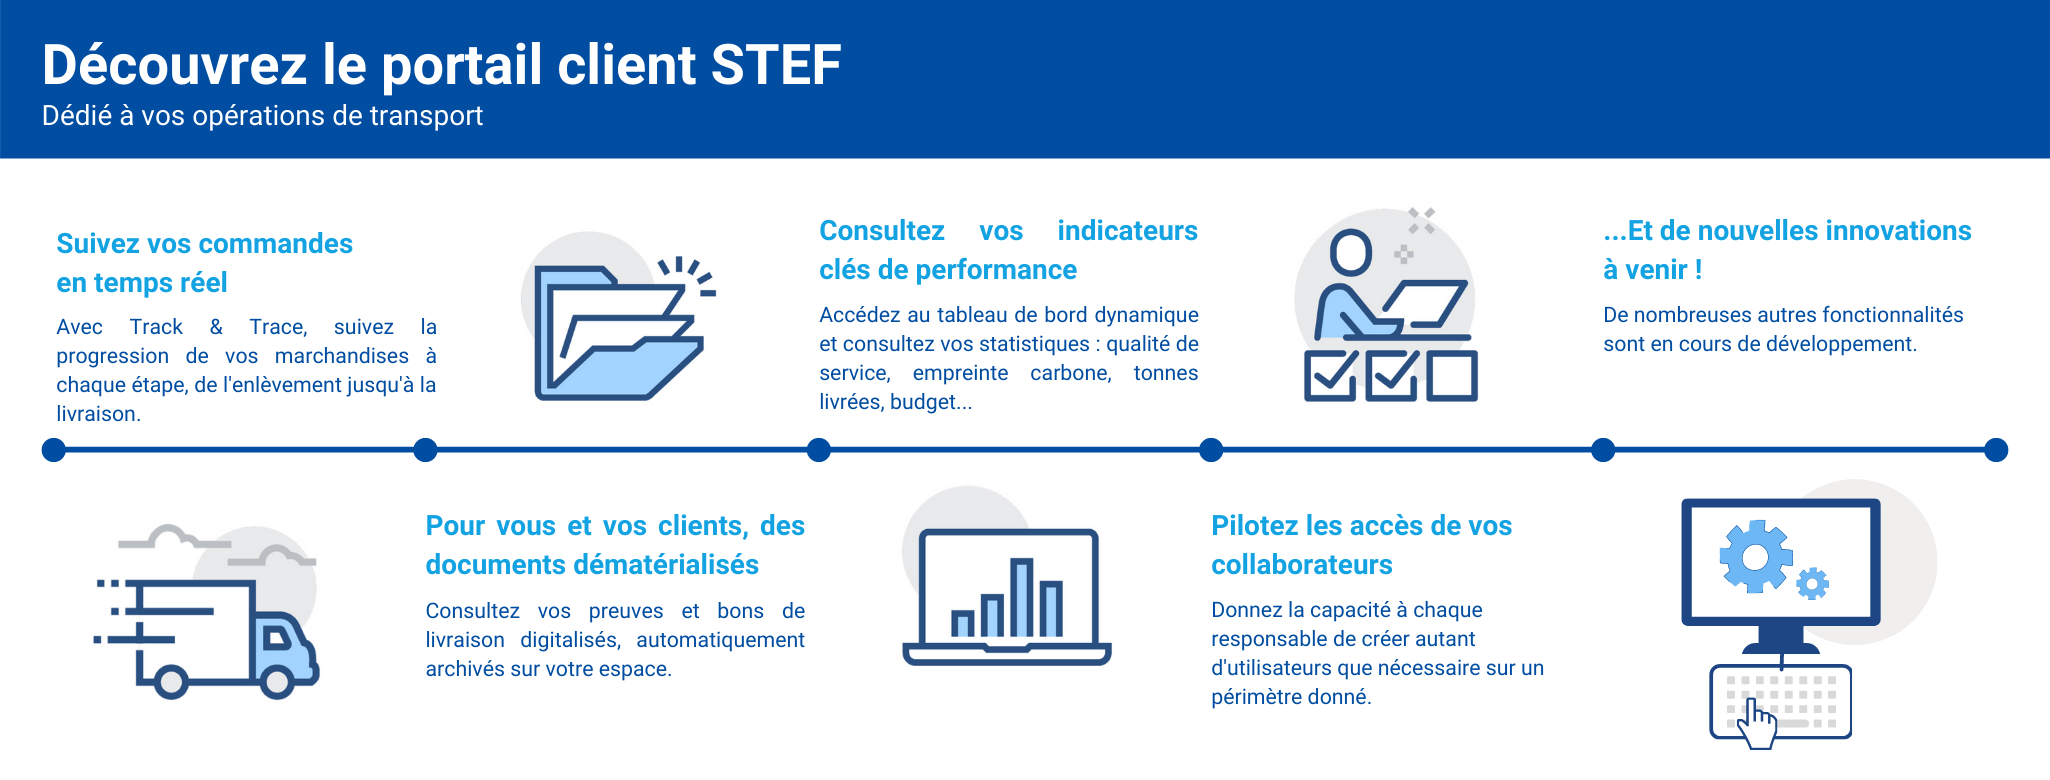 Infographie portail client STEF